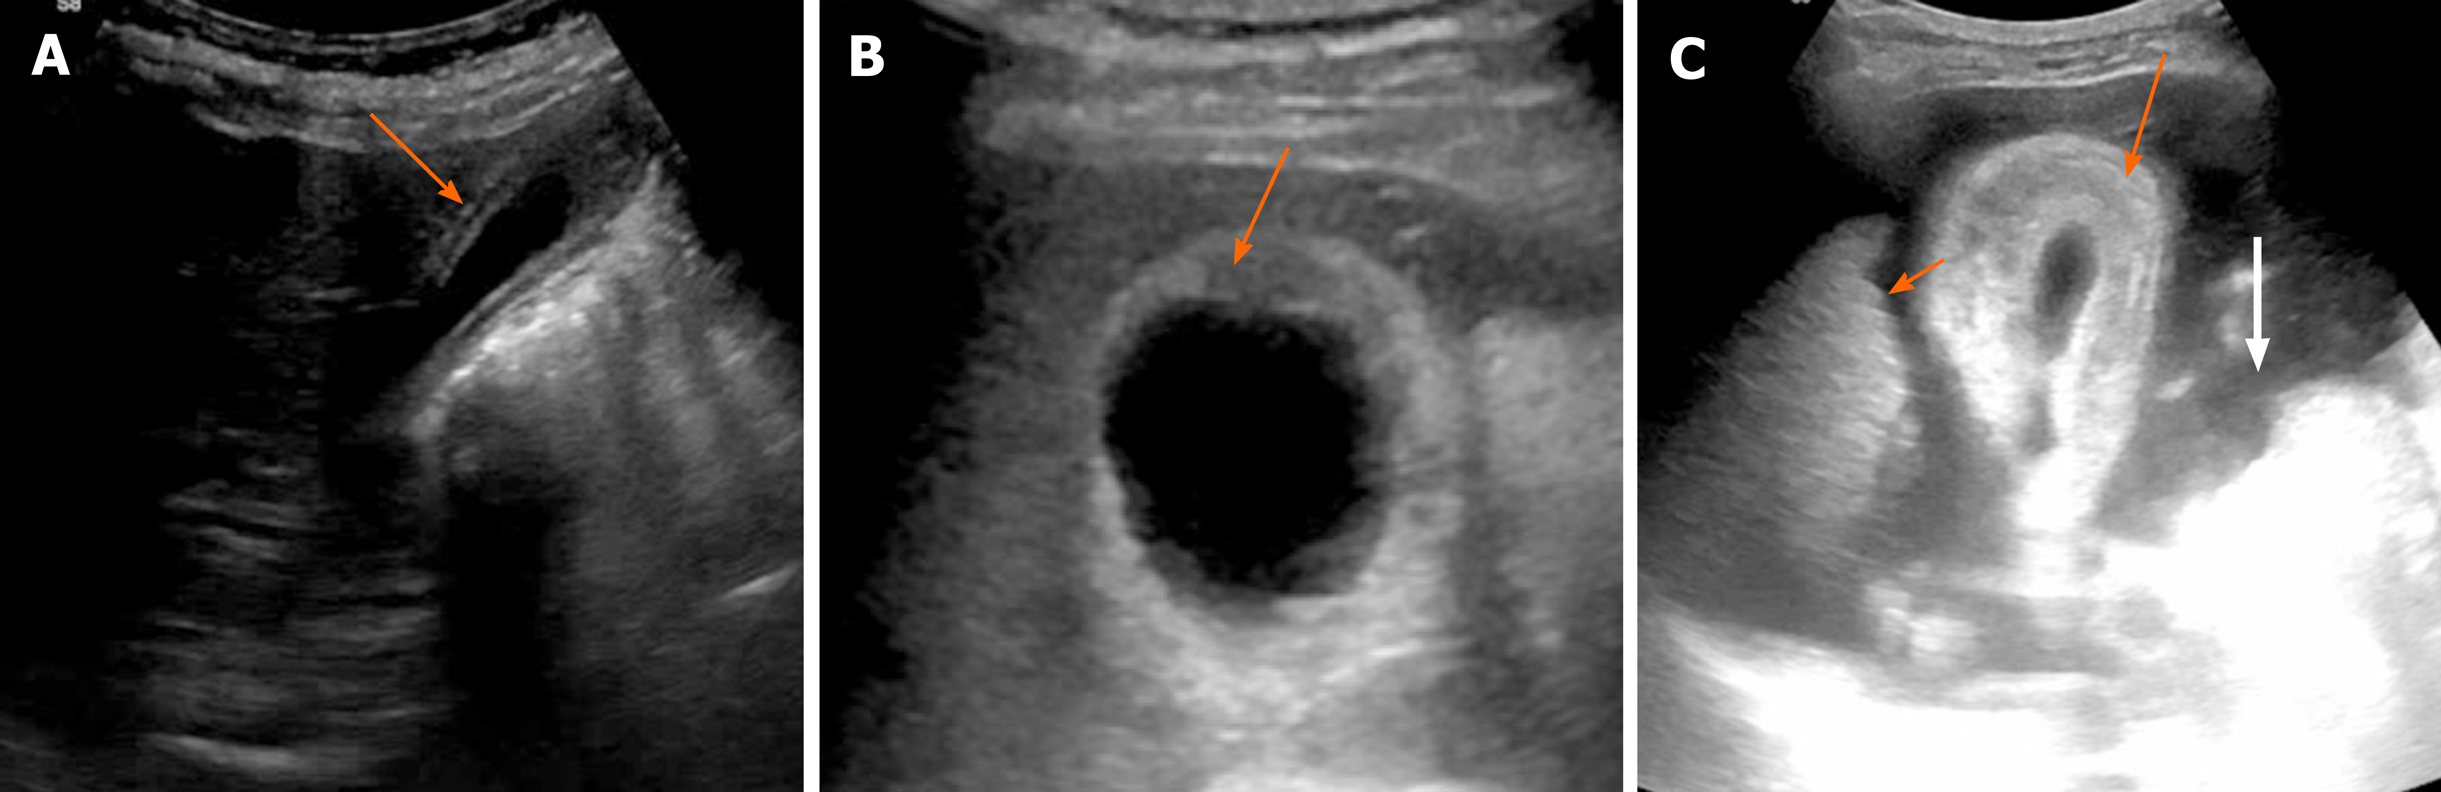 Gallbladder Wall Cyst Ultrasound